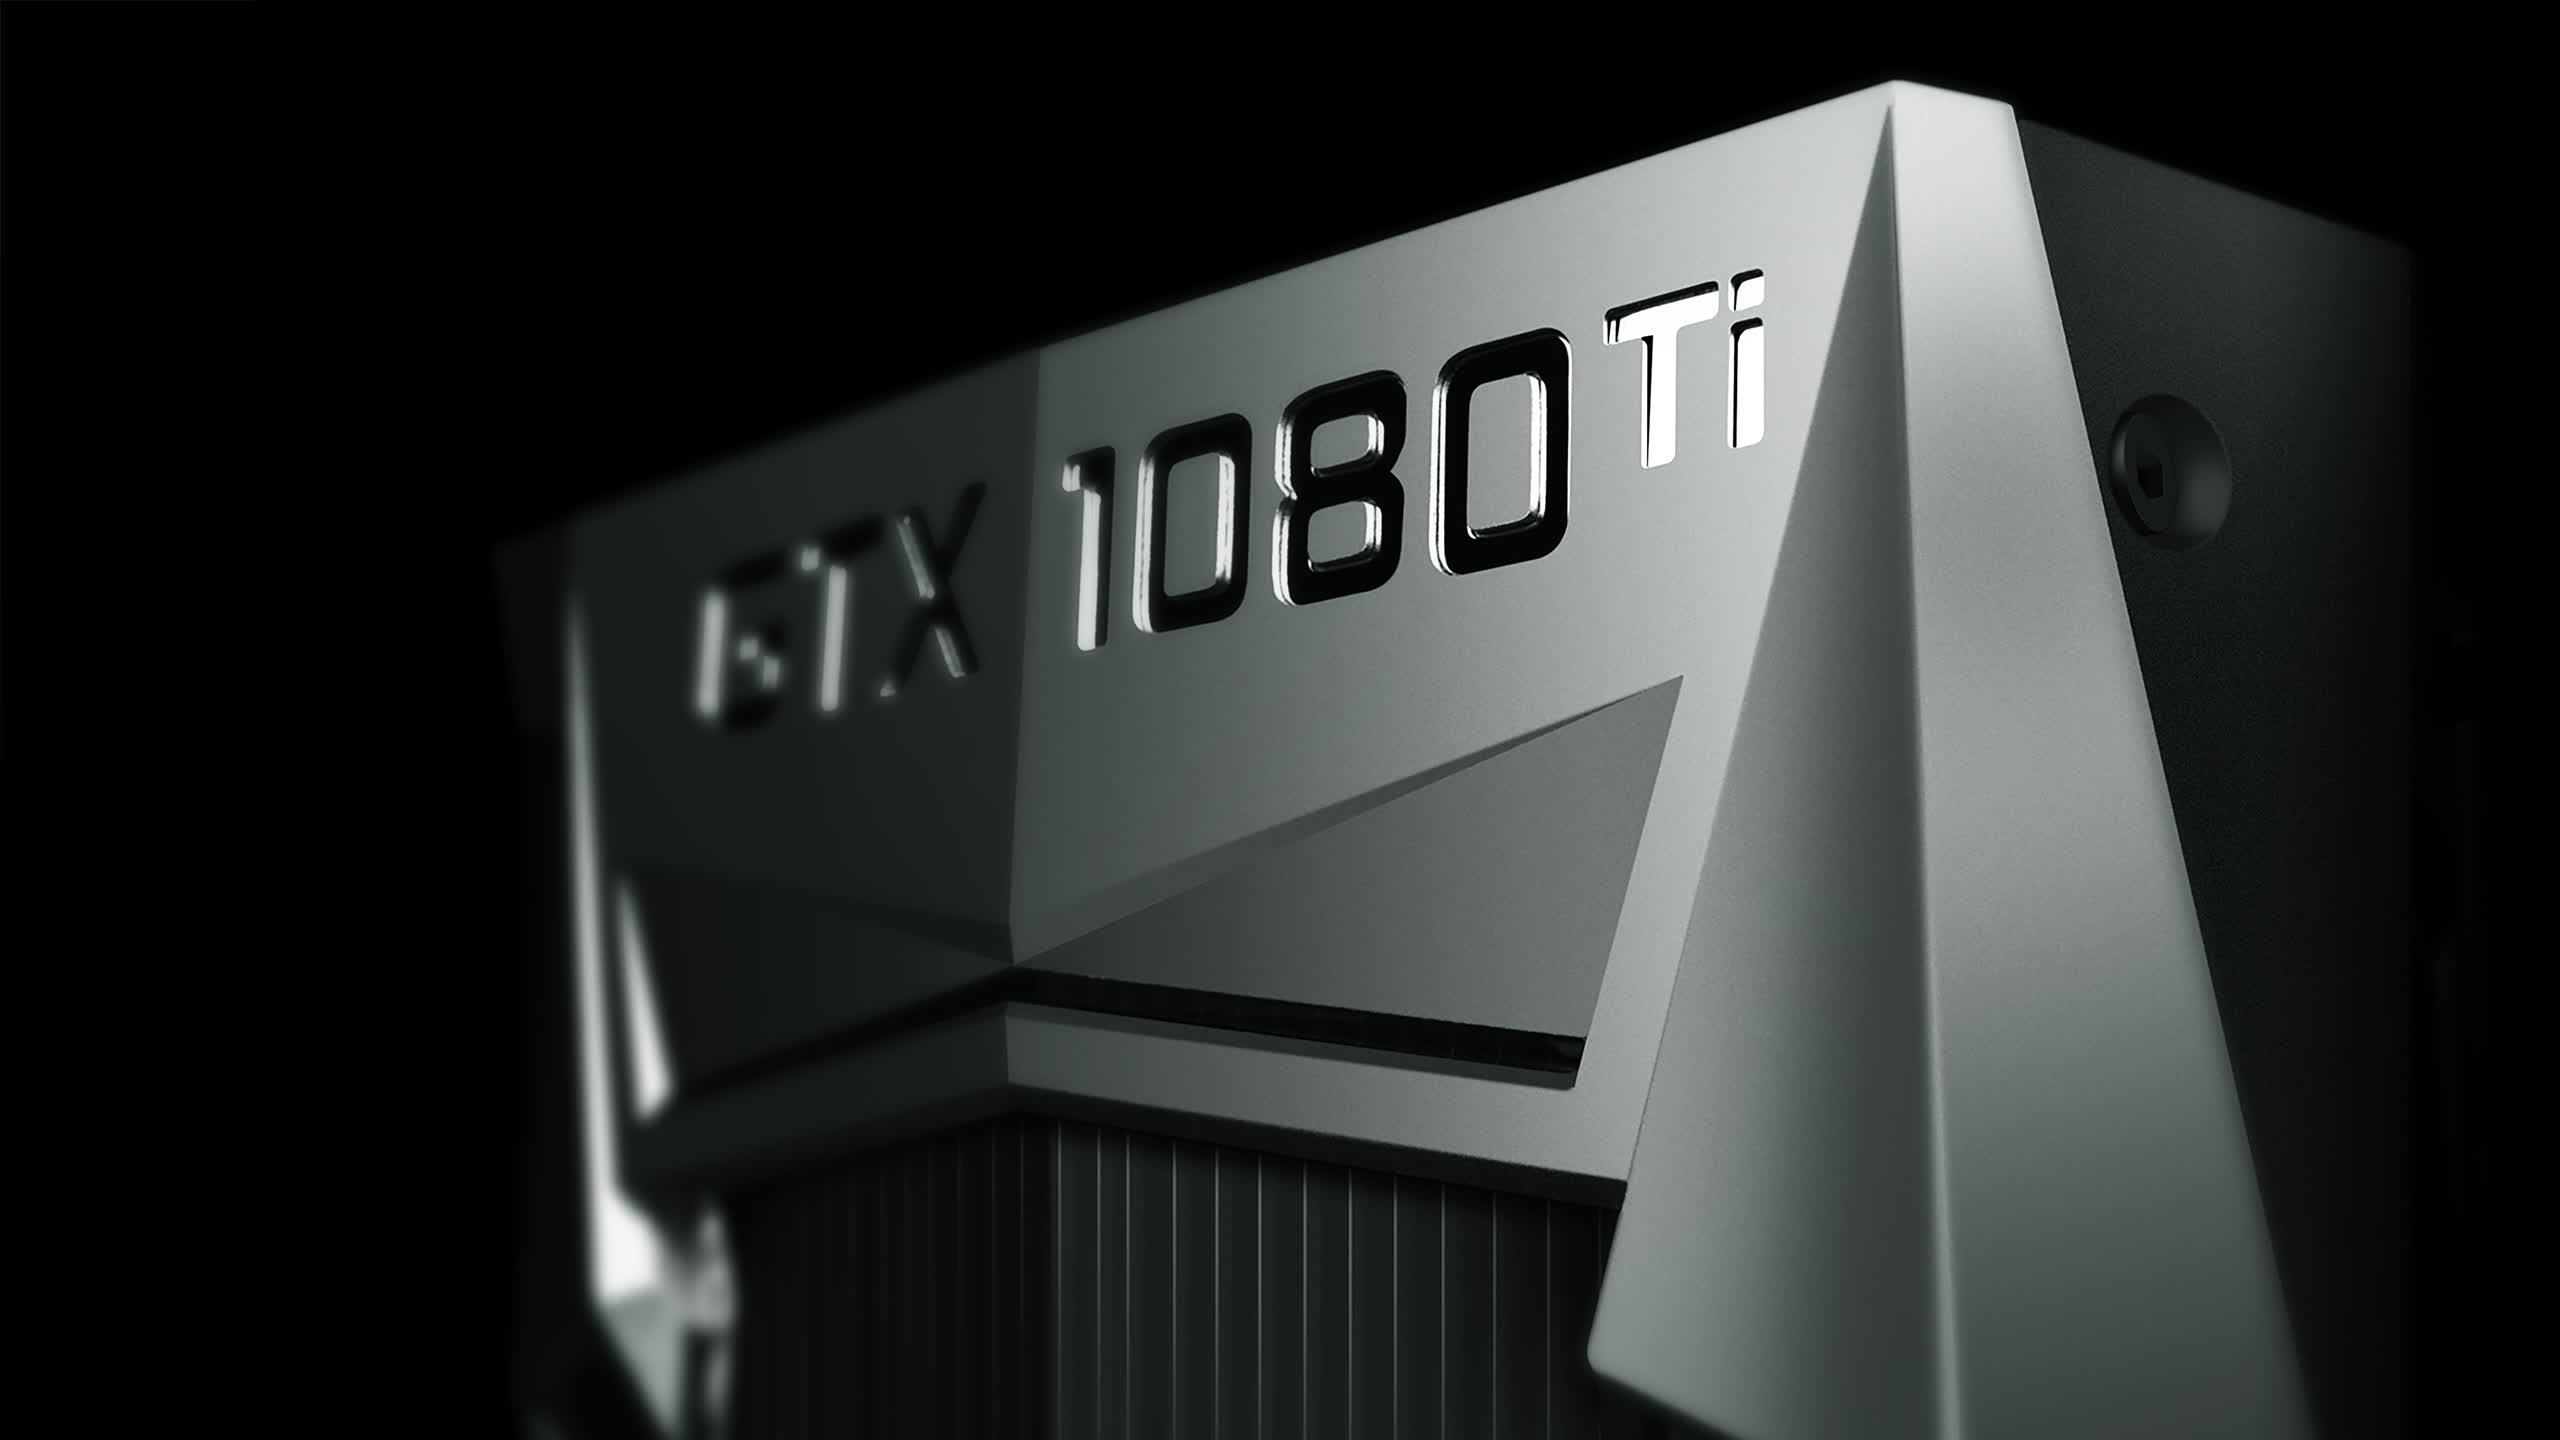 Revisión de Nvidia GeForce GTX 1080: ¿Es esta la CABRA?